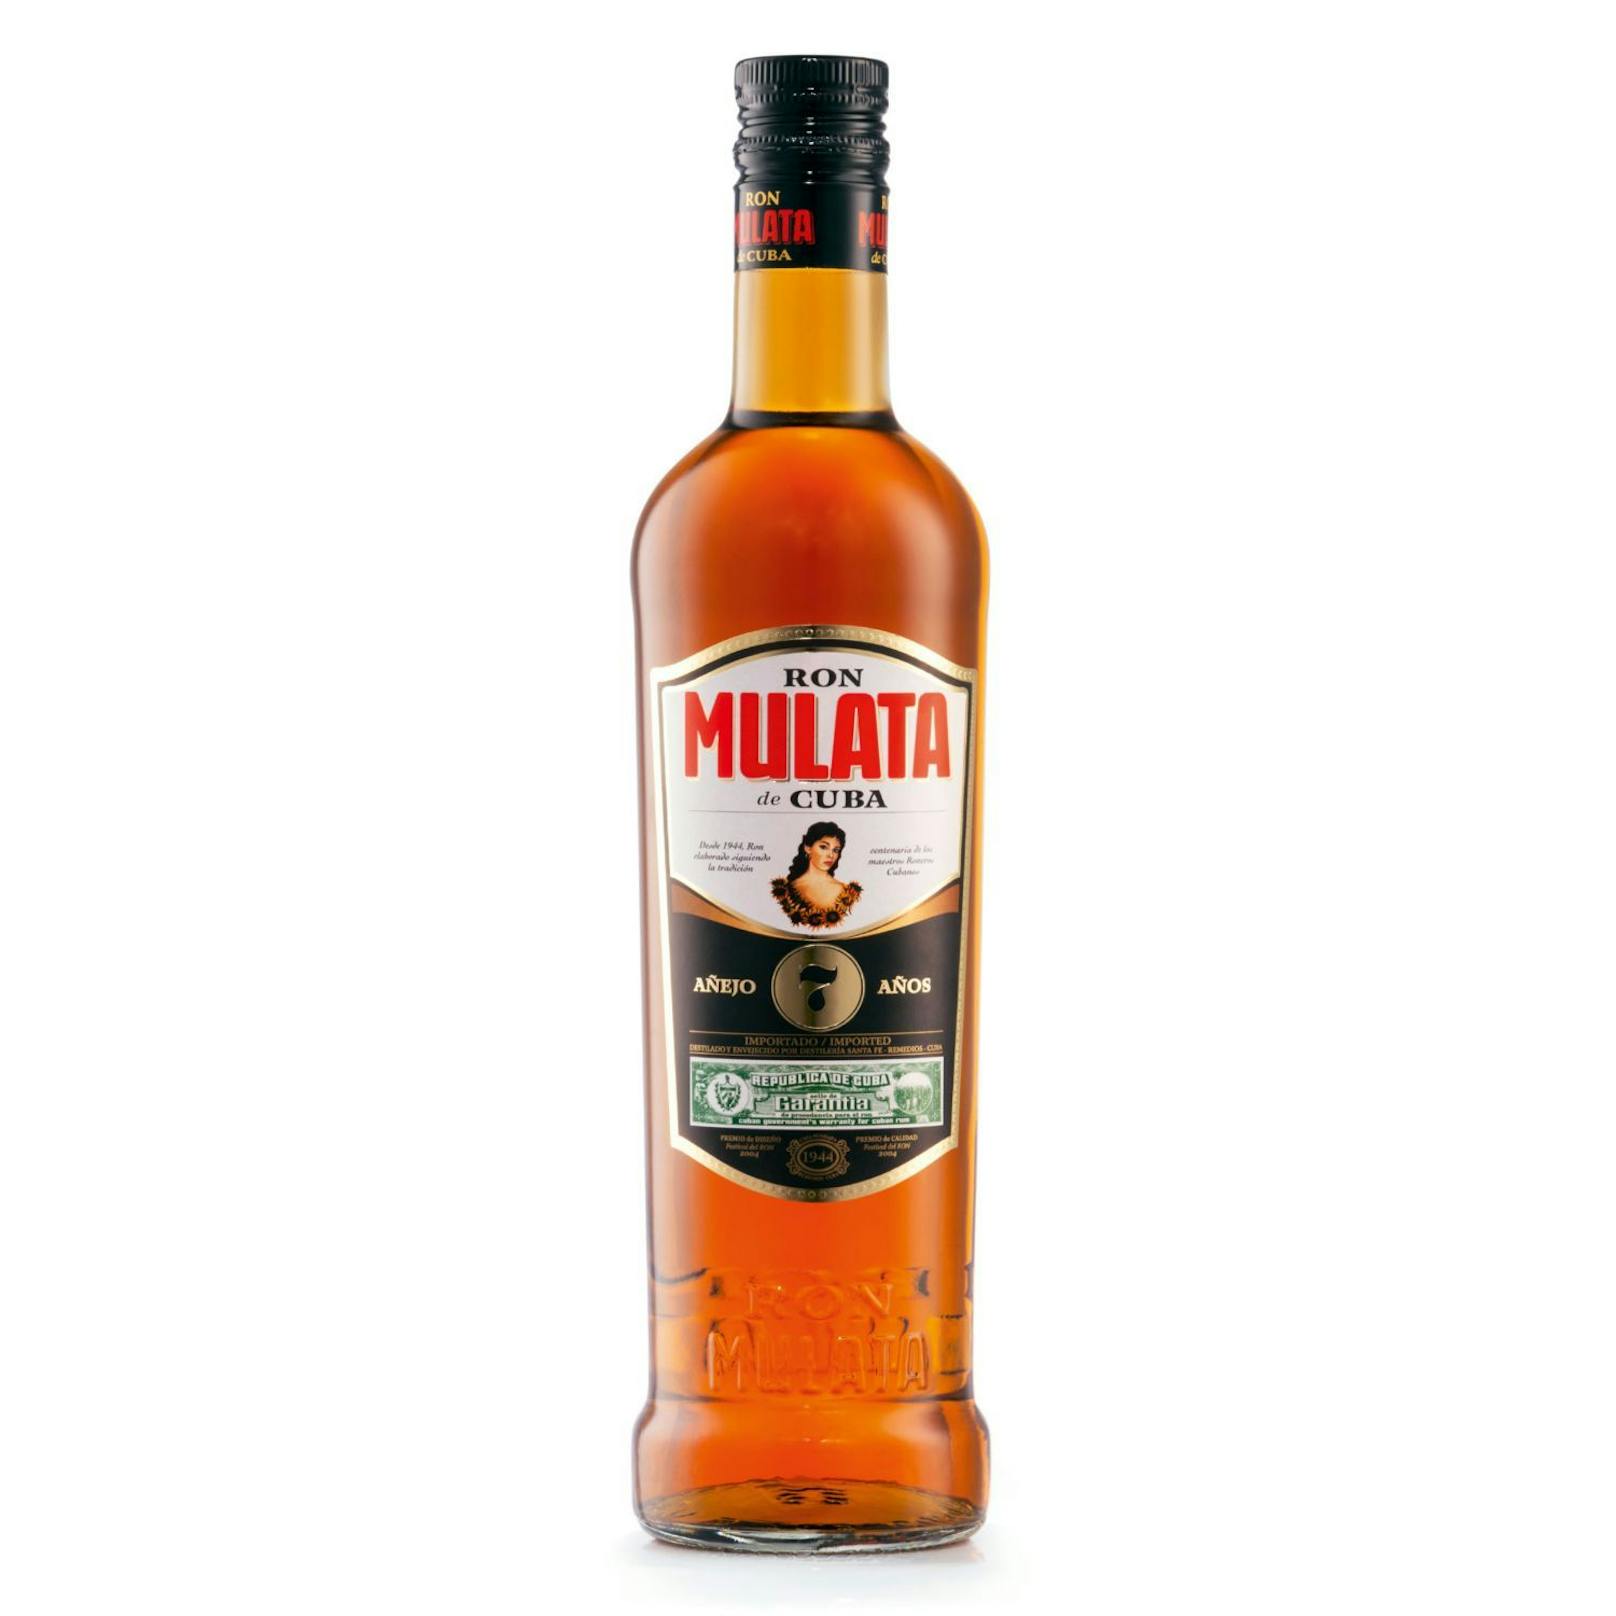 MULATA Kubanischer Rum - hier geht's zum aktuellen Angebot von Hofer: <strong><a target="_blank" href="https://www.hofer.at/de/p.mulata-kubanischer-rum--aejo.000000000000155464.html">https://www.hofer.at</a></strong>